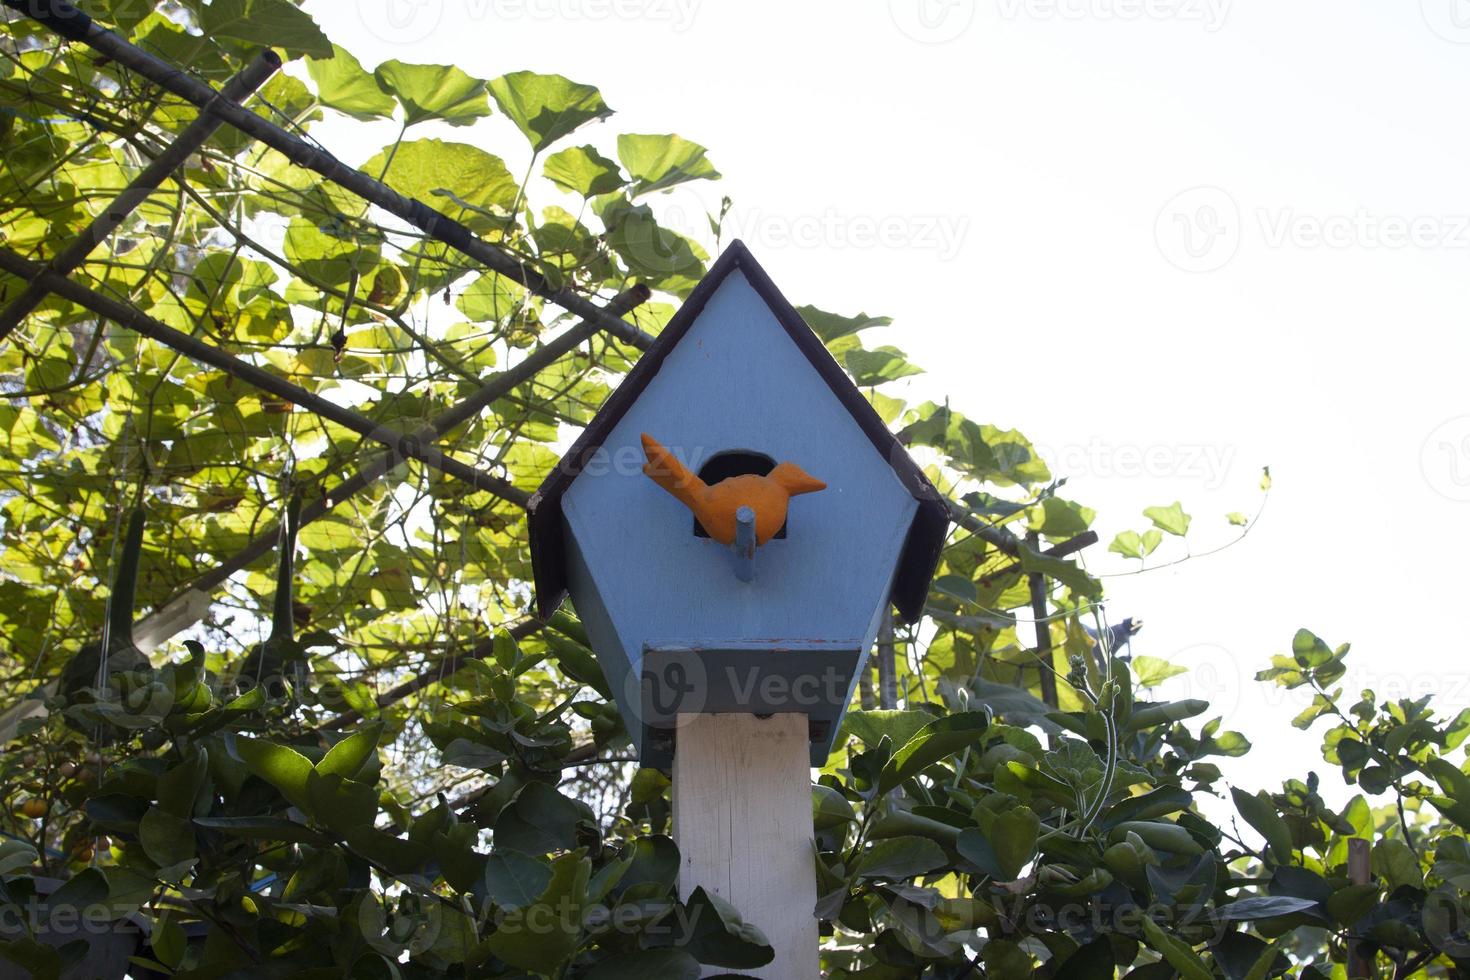 la maison d'oiseau est une maison d'oiseau artificielle pour les oiseaux et symbolise les oiseaux vivant dans le jardin de l'agriculteur, construit et modélisé pour ressembler à la nature qui permet aux oiseaux de vivre, de construire des nids photo